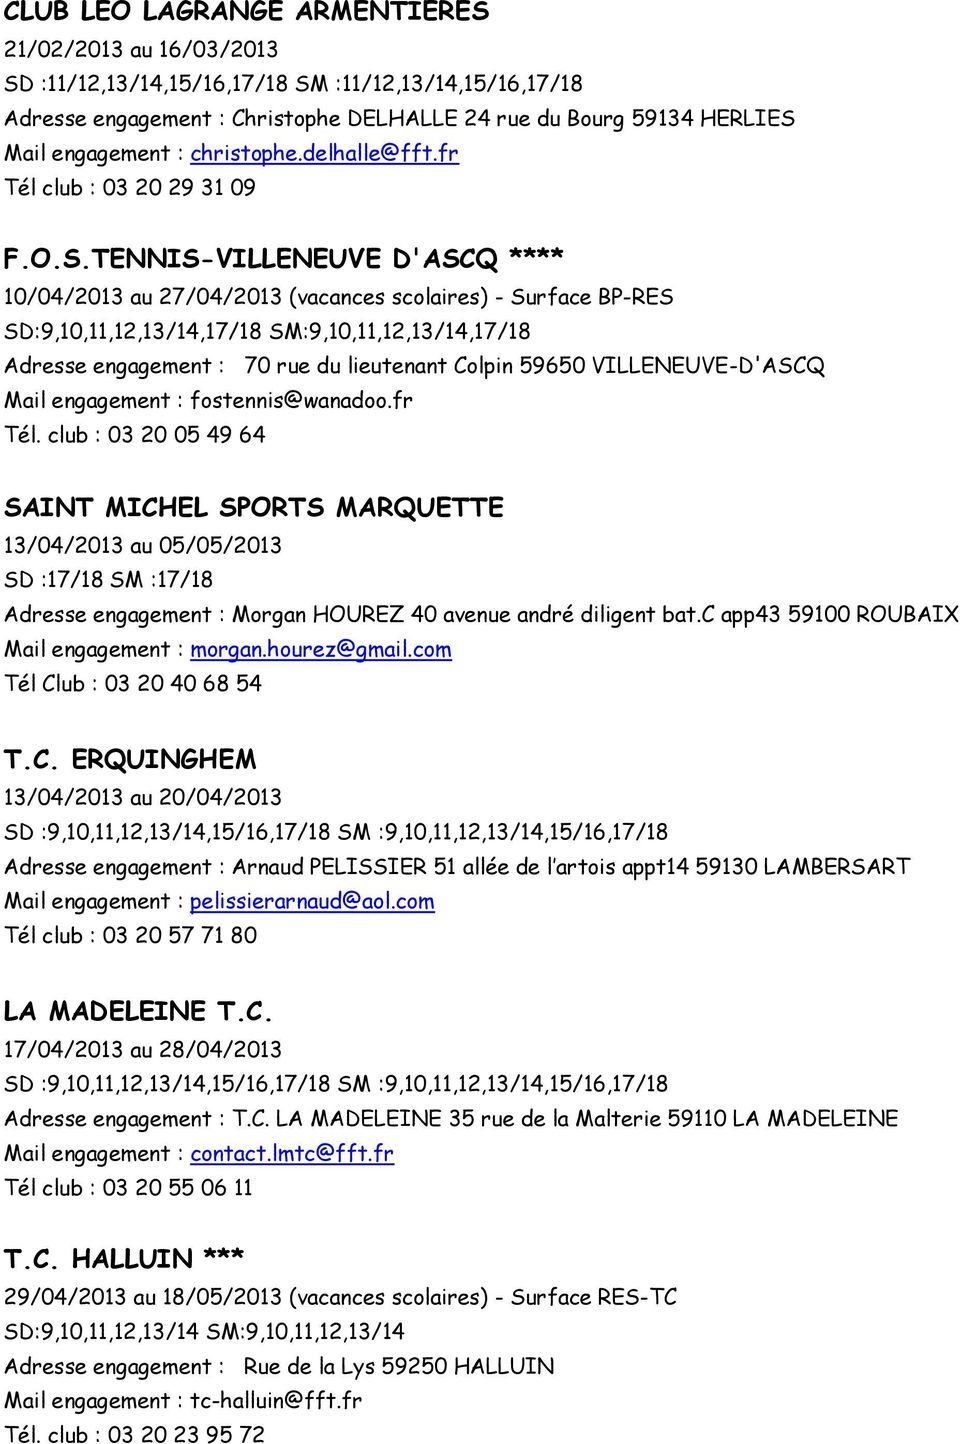 TENNIS-VILLENEUVE D'ASCQ **** 10/04/2013 au 27/04/2013 (vacances scolaires) - Surface BP-RES SD:9,10,11,12,13/14,17/18 SM:9,10,11,12,13/14,17/18 Adresse engagement : 70 rue du lieutenant Colpin 59650